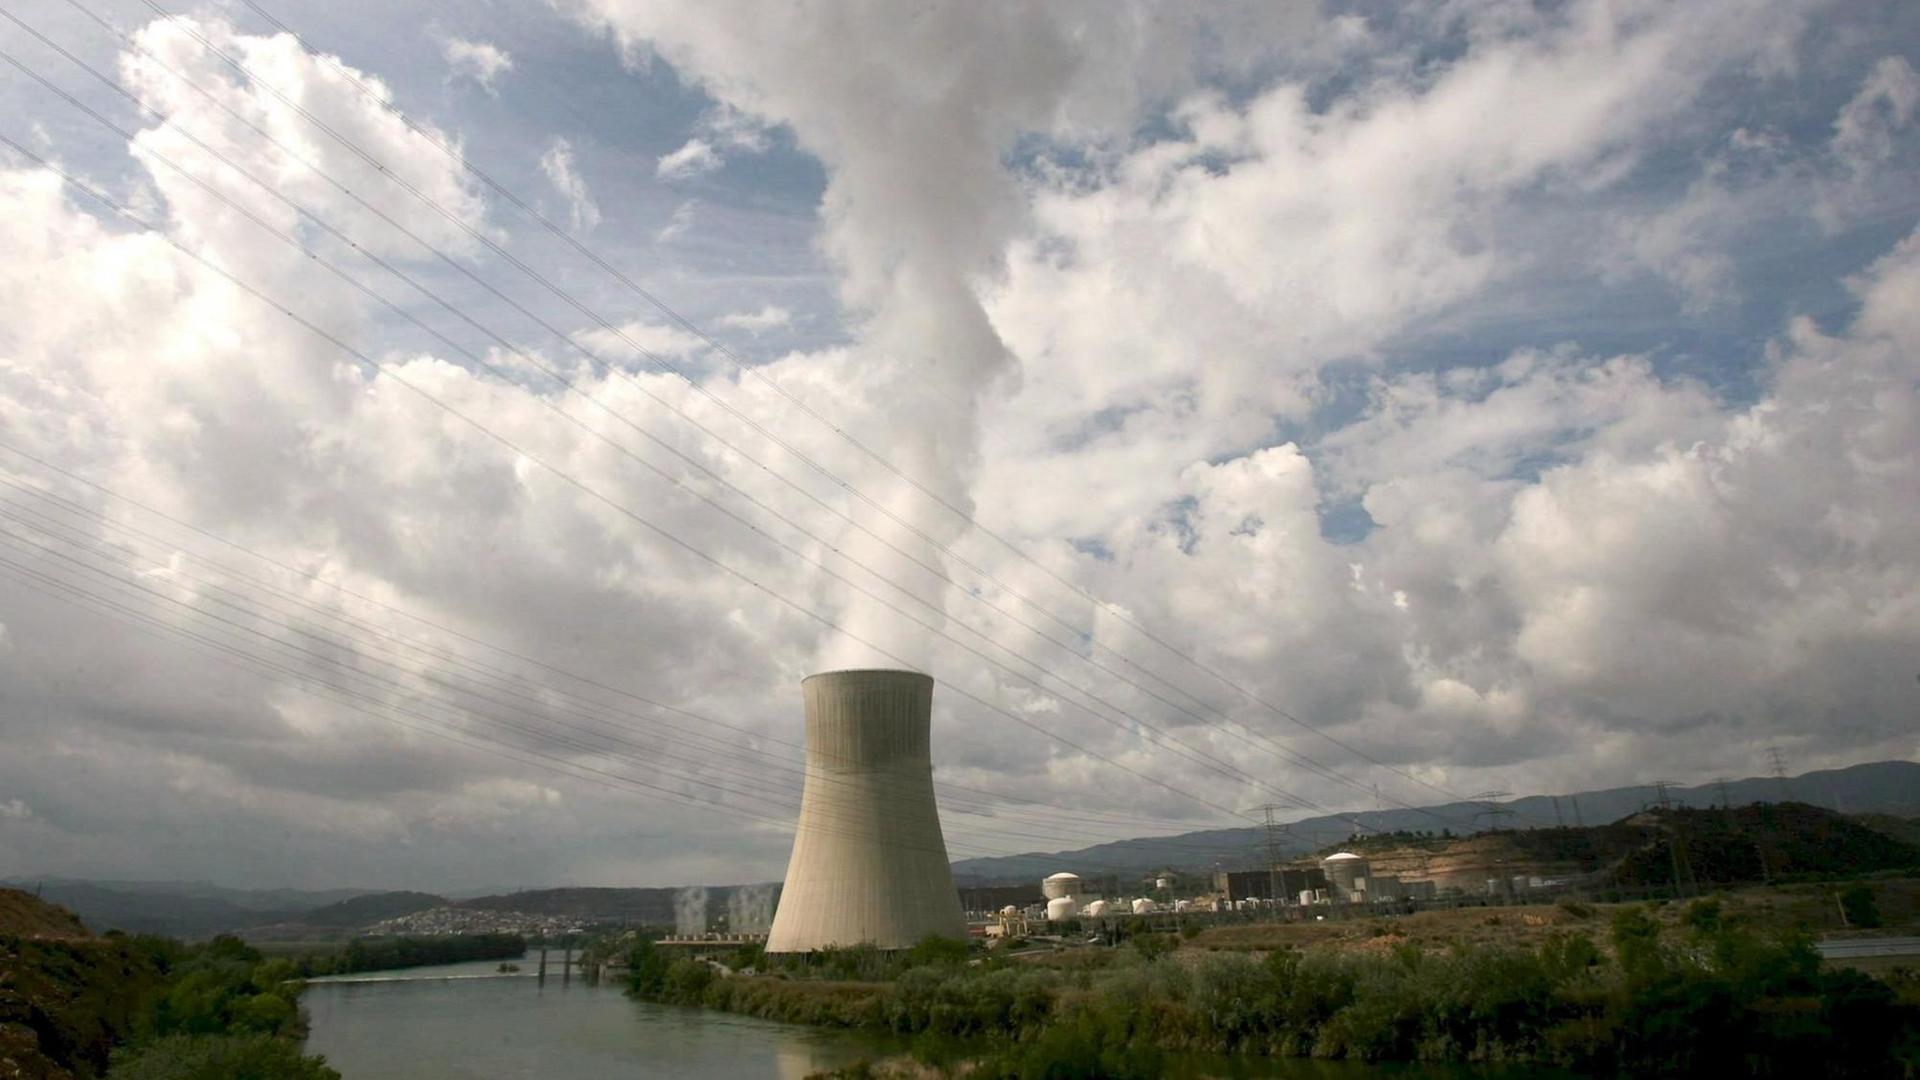 Das Atom-Kraftwerk bei Tarragona: Hier gab es im Jahr 2007 einen Vorfall, bei dem radioaktive Partikel durch das Belüftungssystem ausgetreten waren.